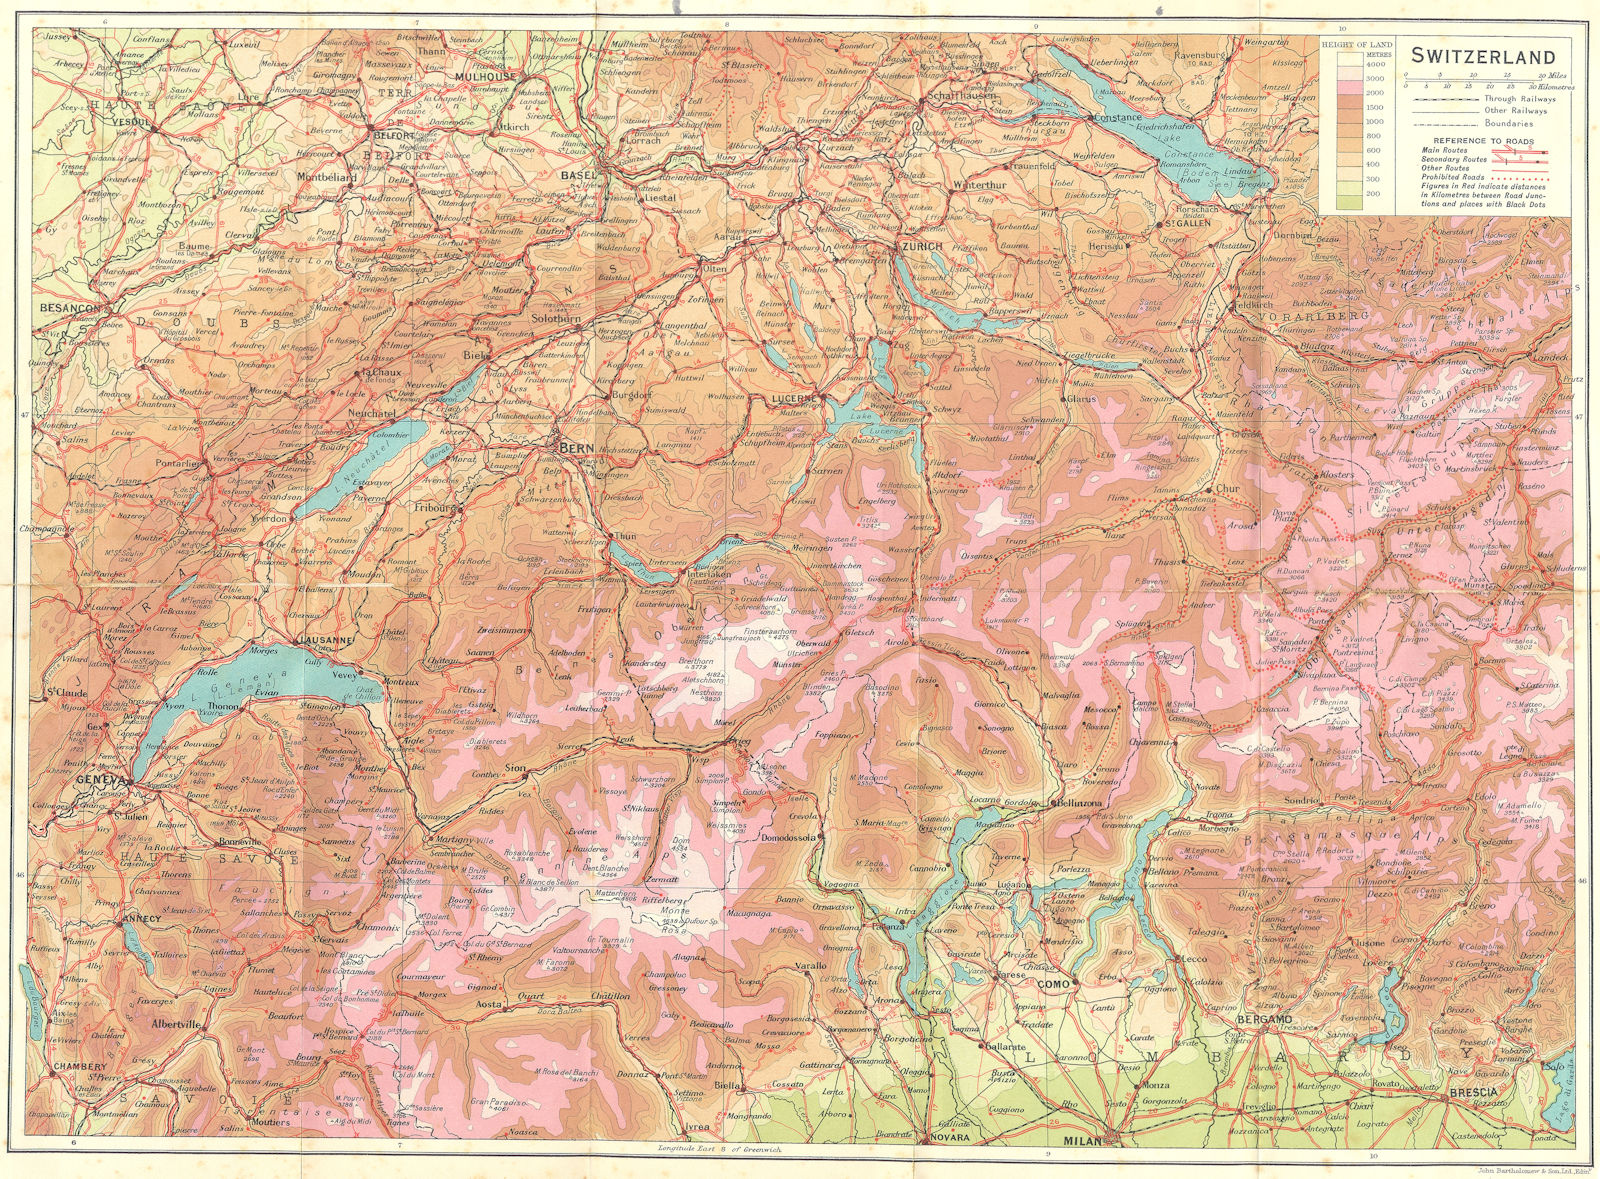 SWITZERLAND. Switzerland 1923 old antique vintage map plan chart